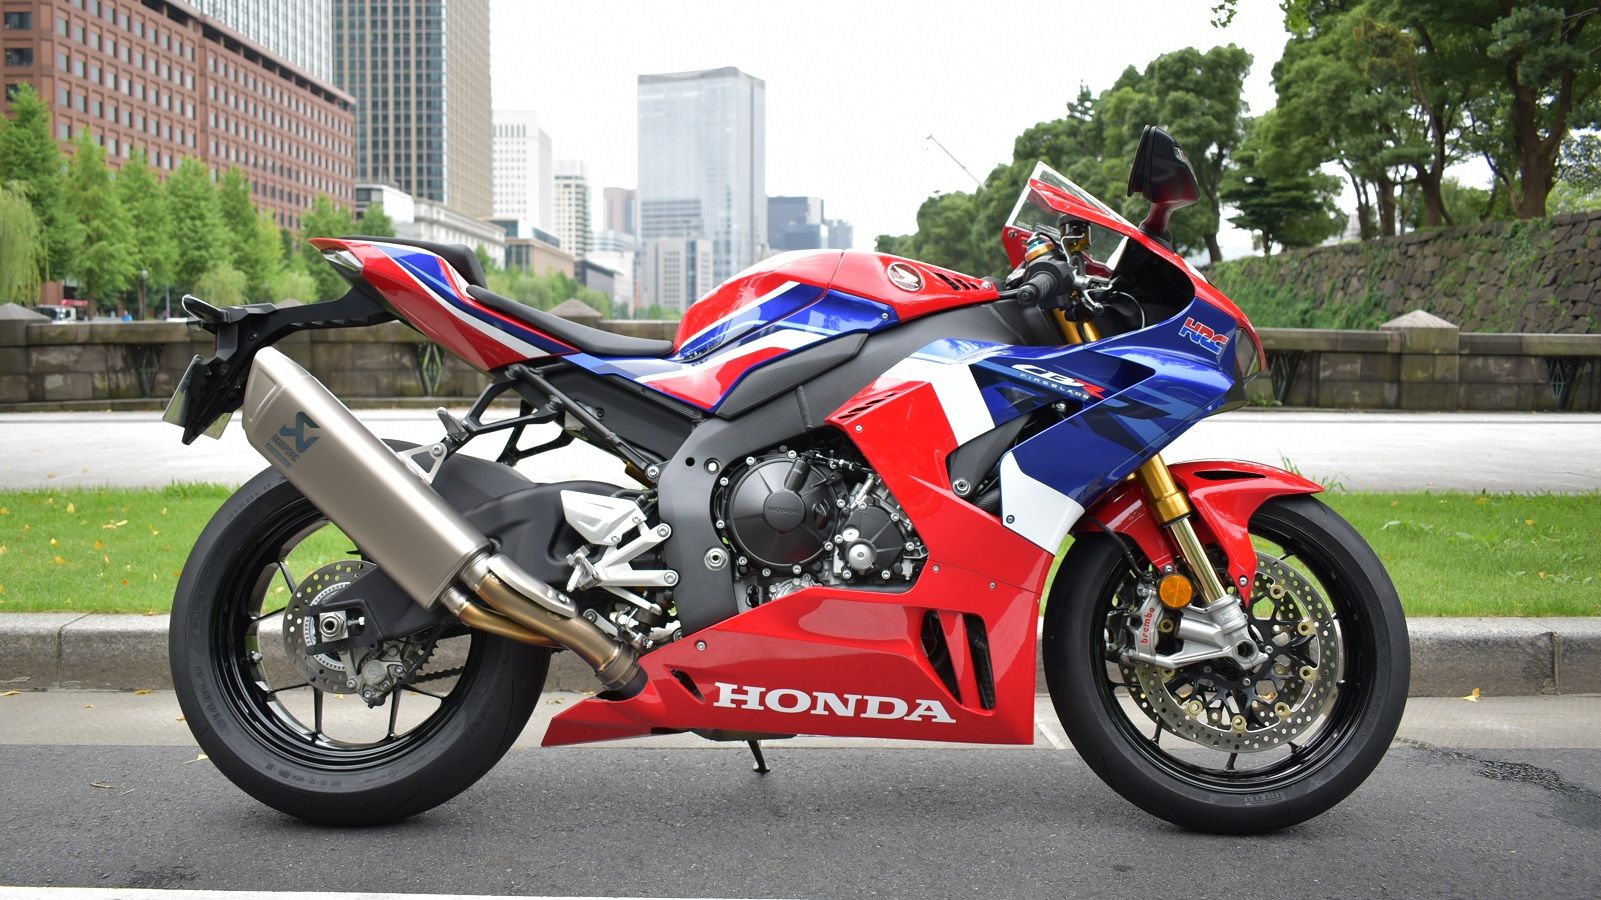 ホンダの 最新スーパーバイク 正統進化の凄み 2輪車 東洋経済オンライン 社会をよくする経済ニュース